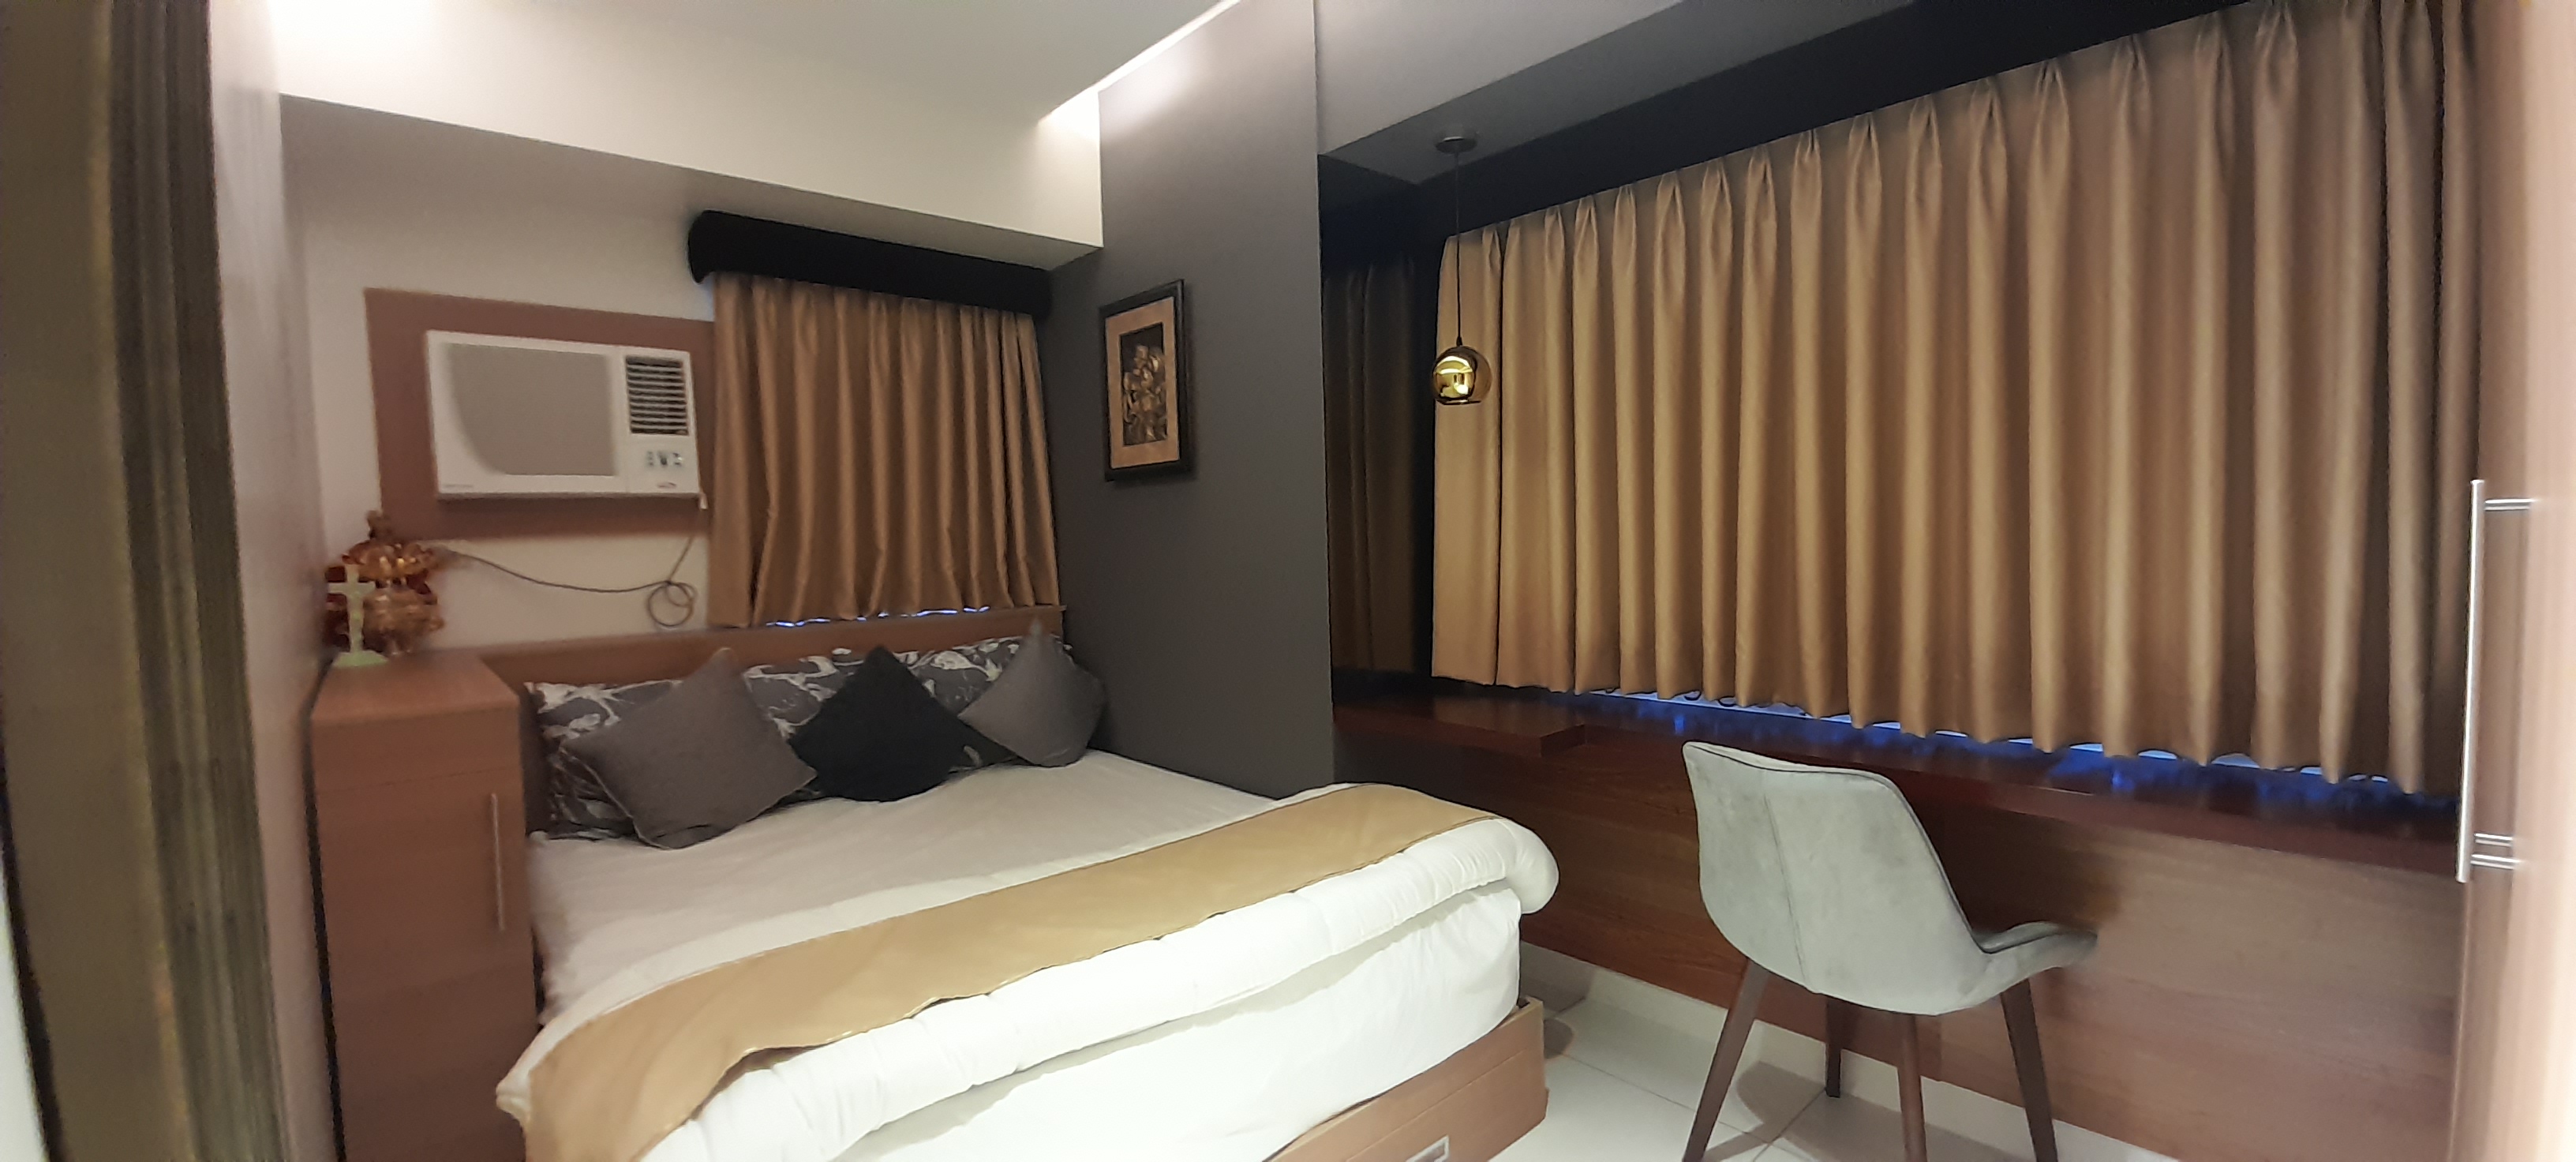 horizons-101-residences-fully-furnished-1-bedroom-cebu-city